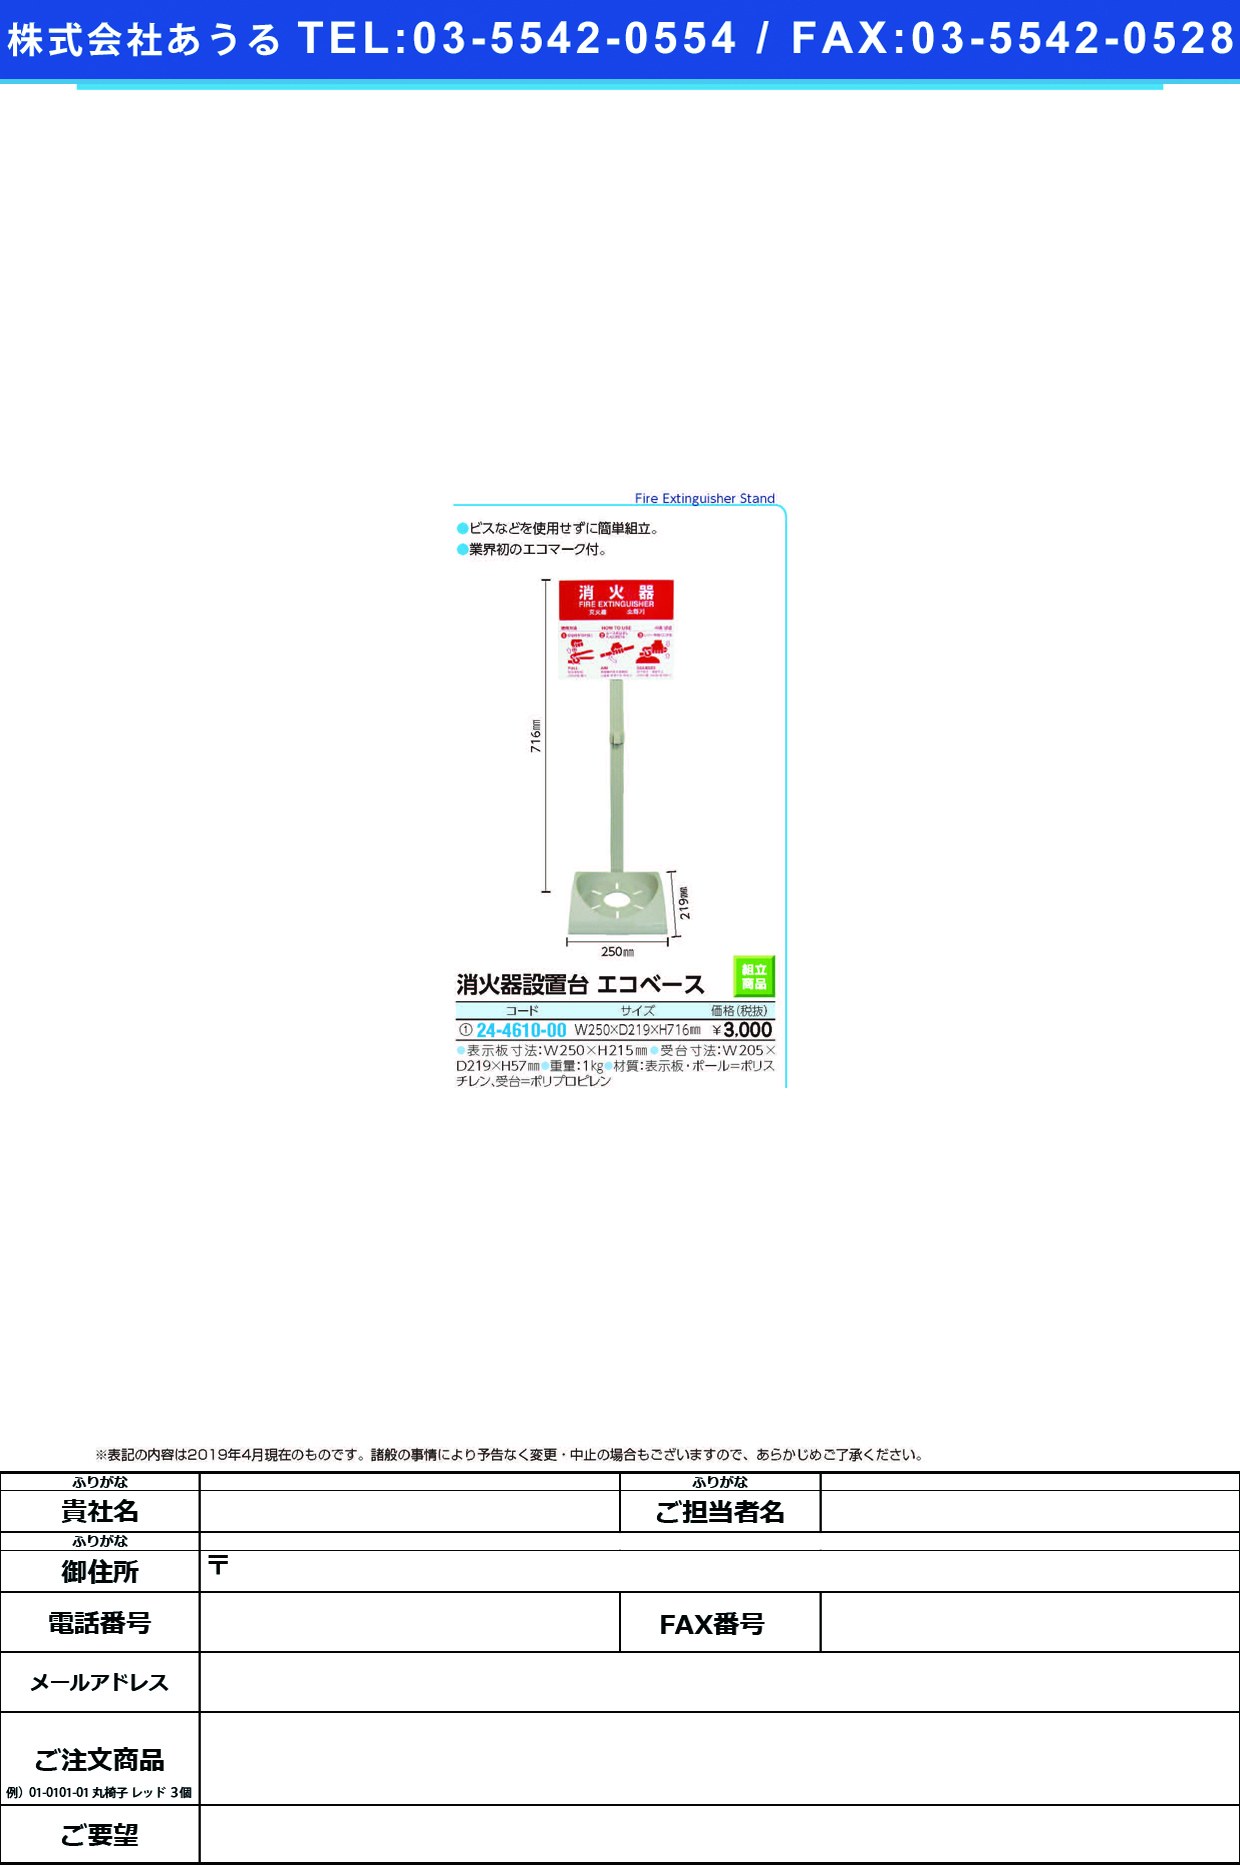 (24-4610-00)消火器設置台エコベース 73973 ｼｮｳｶｷｾｯﾁﾀﾞｲｴｺﾍﾞｰｽ【1台単位】【2019年カタログ商品】